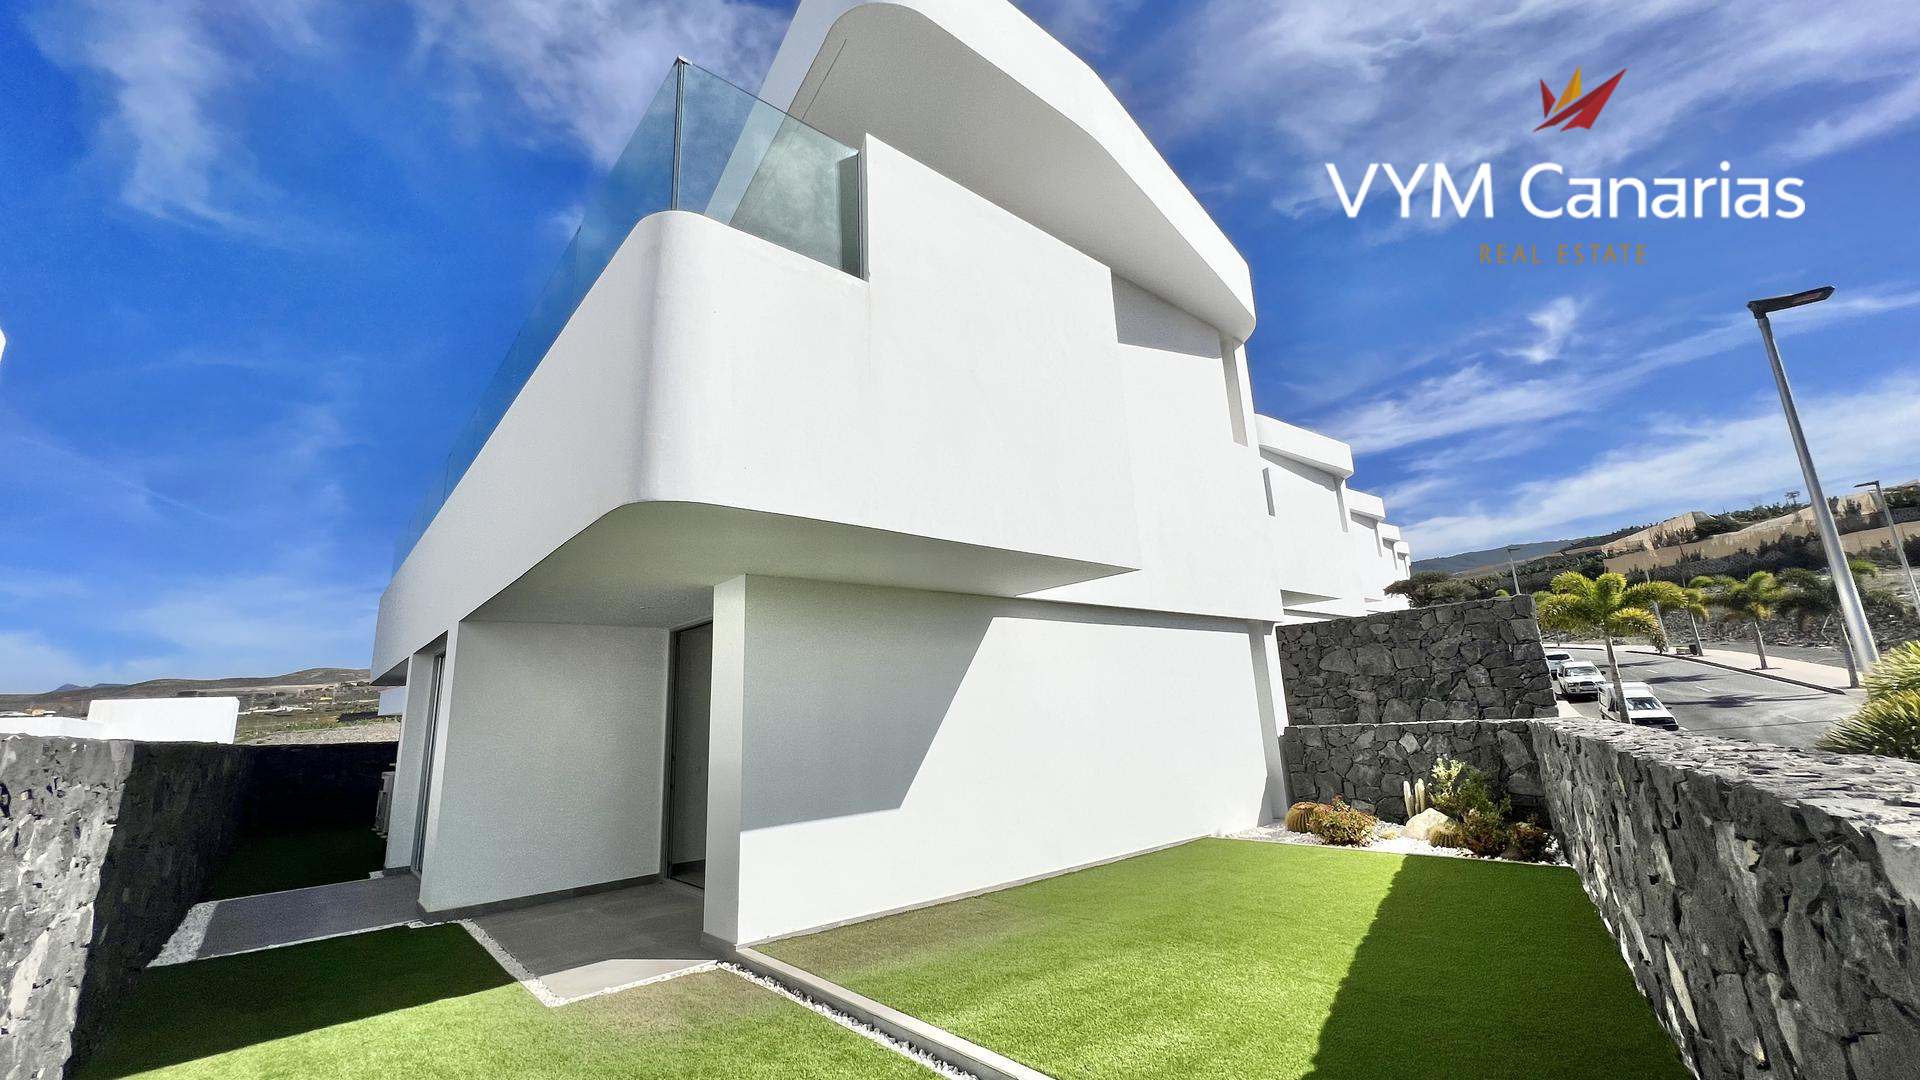 Villa in Callao Salvaje marketed by Vym Canarias